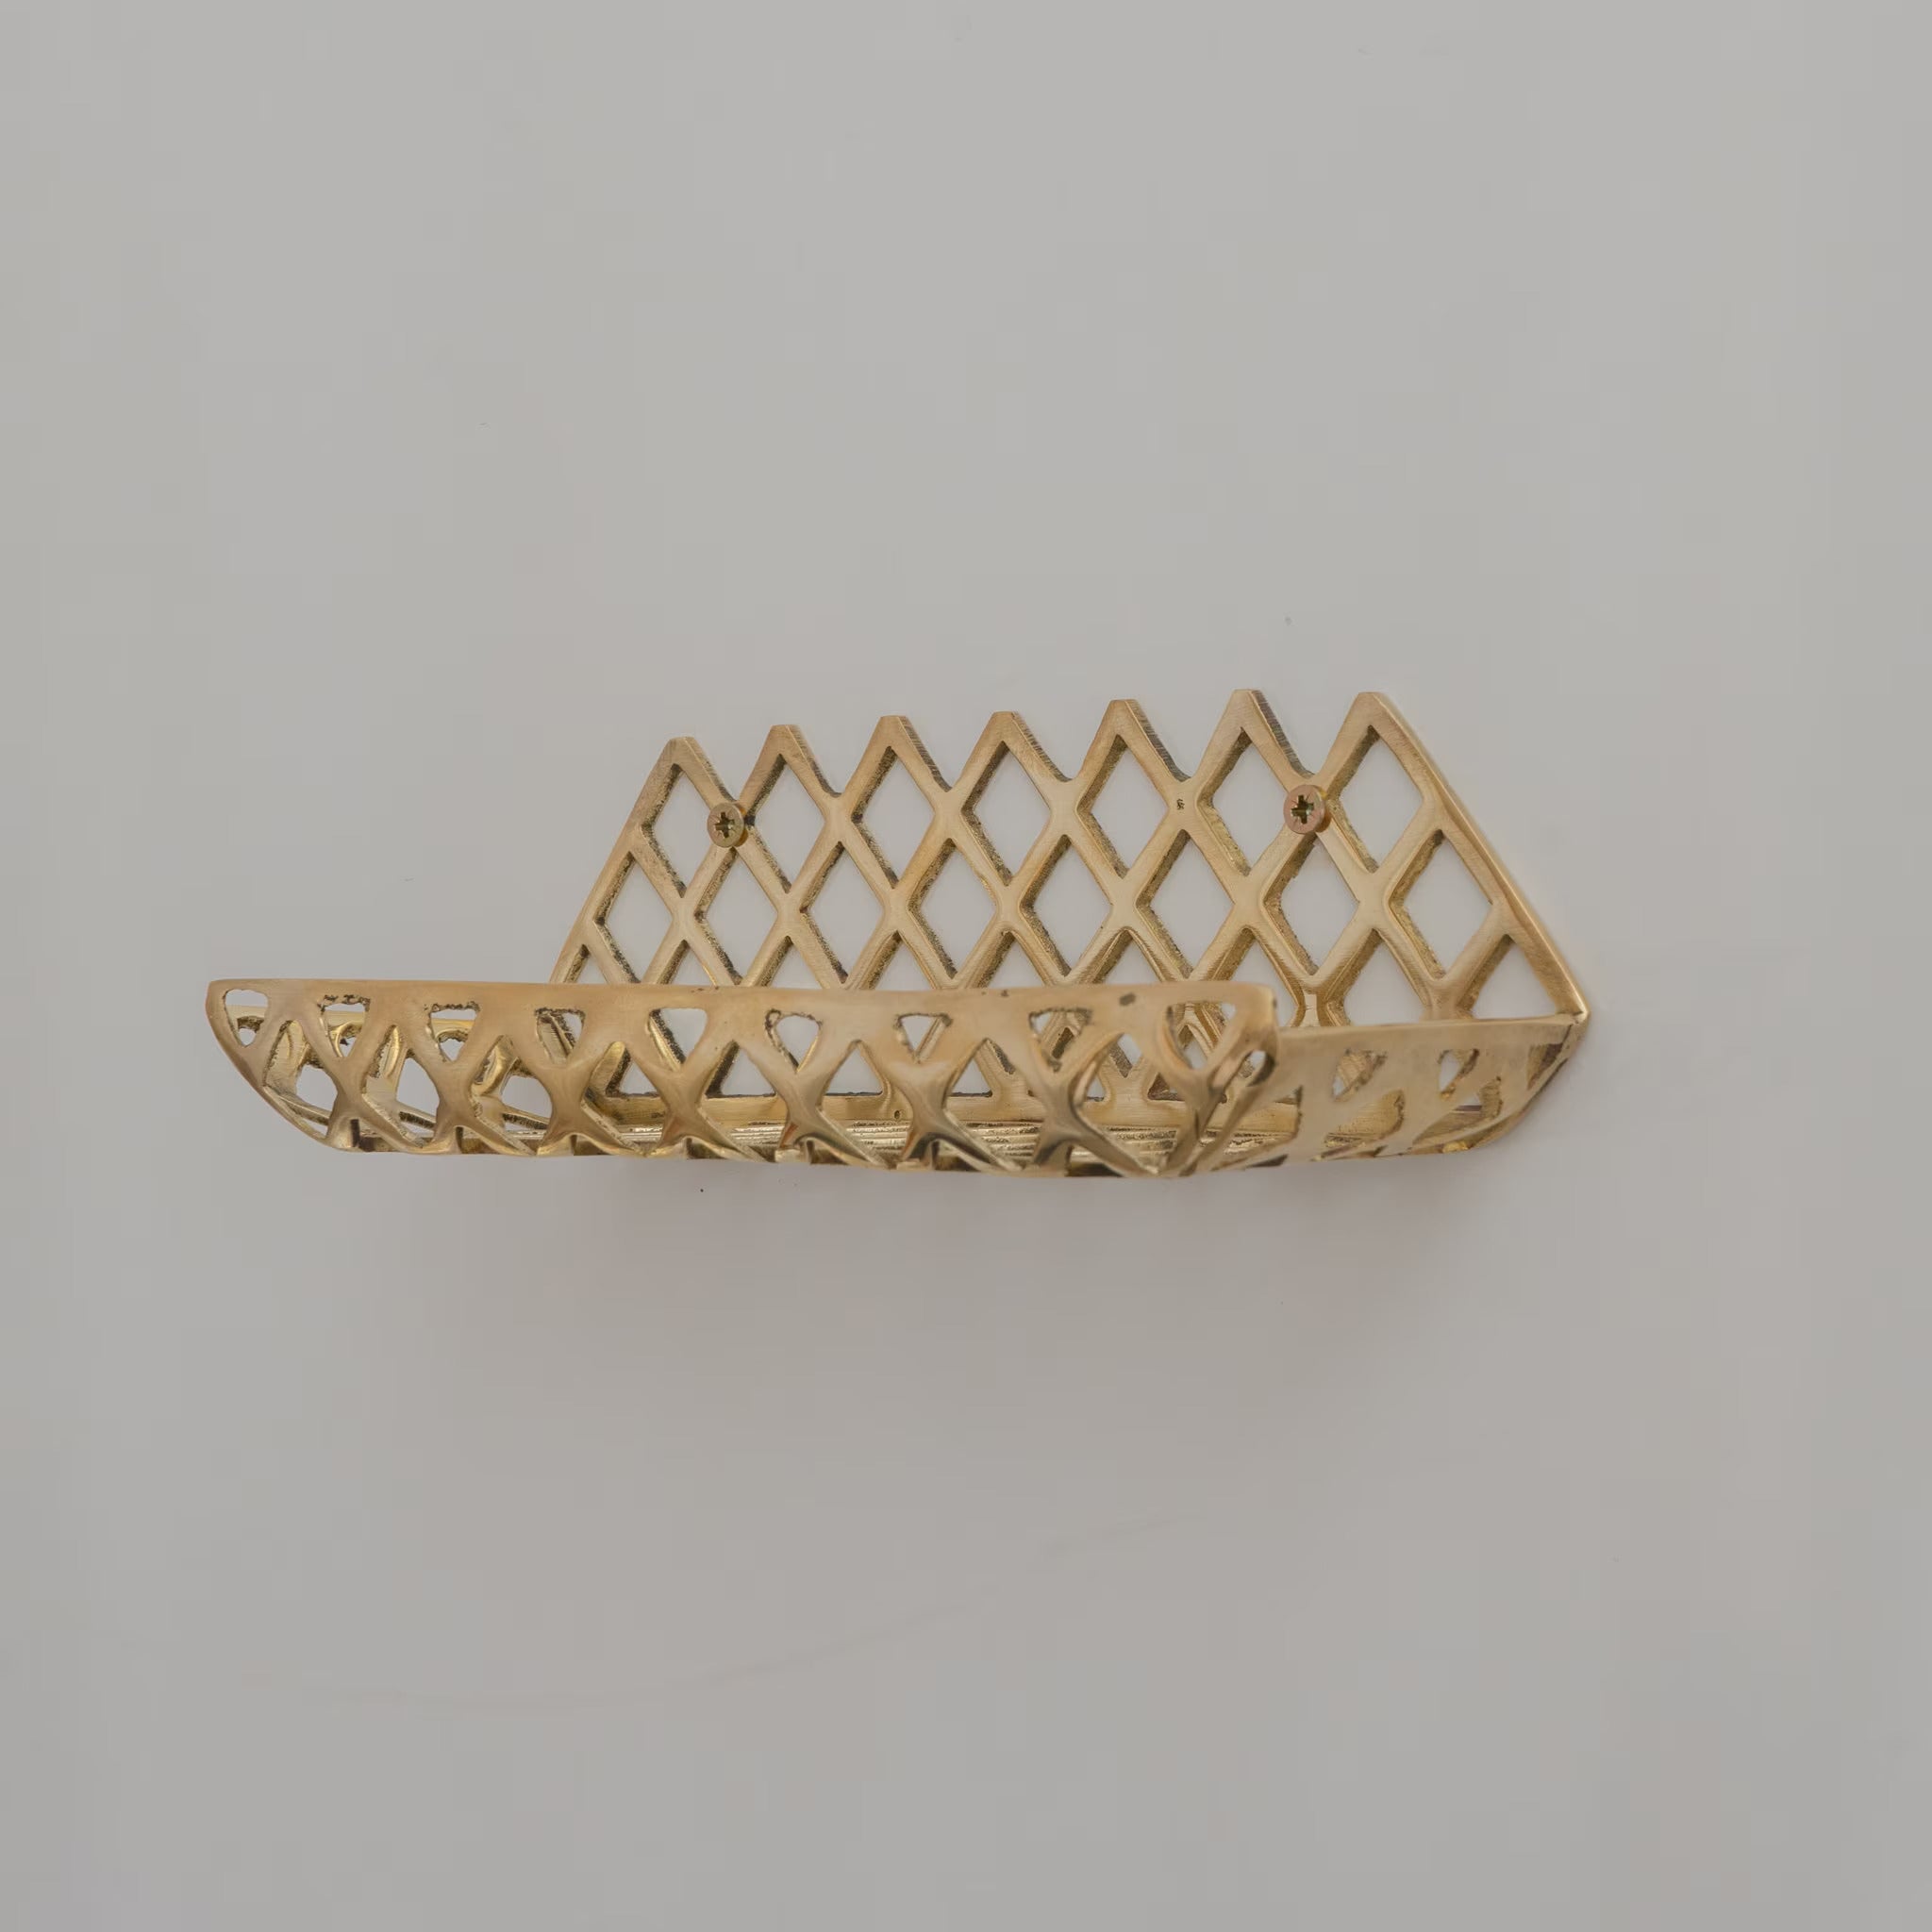 Unlacquered Brass Wall Shelf for Shower, Hand crafted Shelf, Grid Shelf, Bathroom Shelf